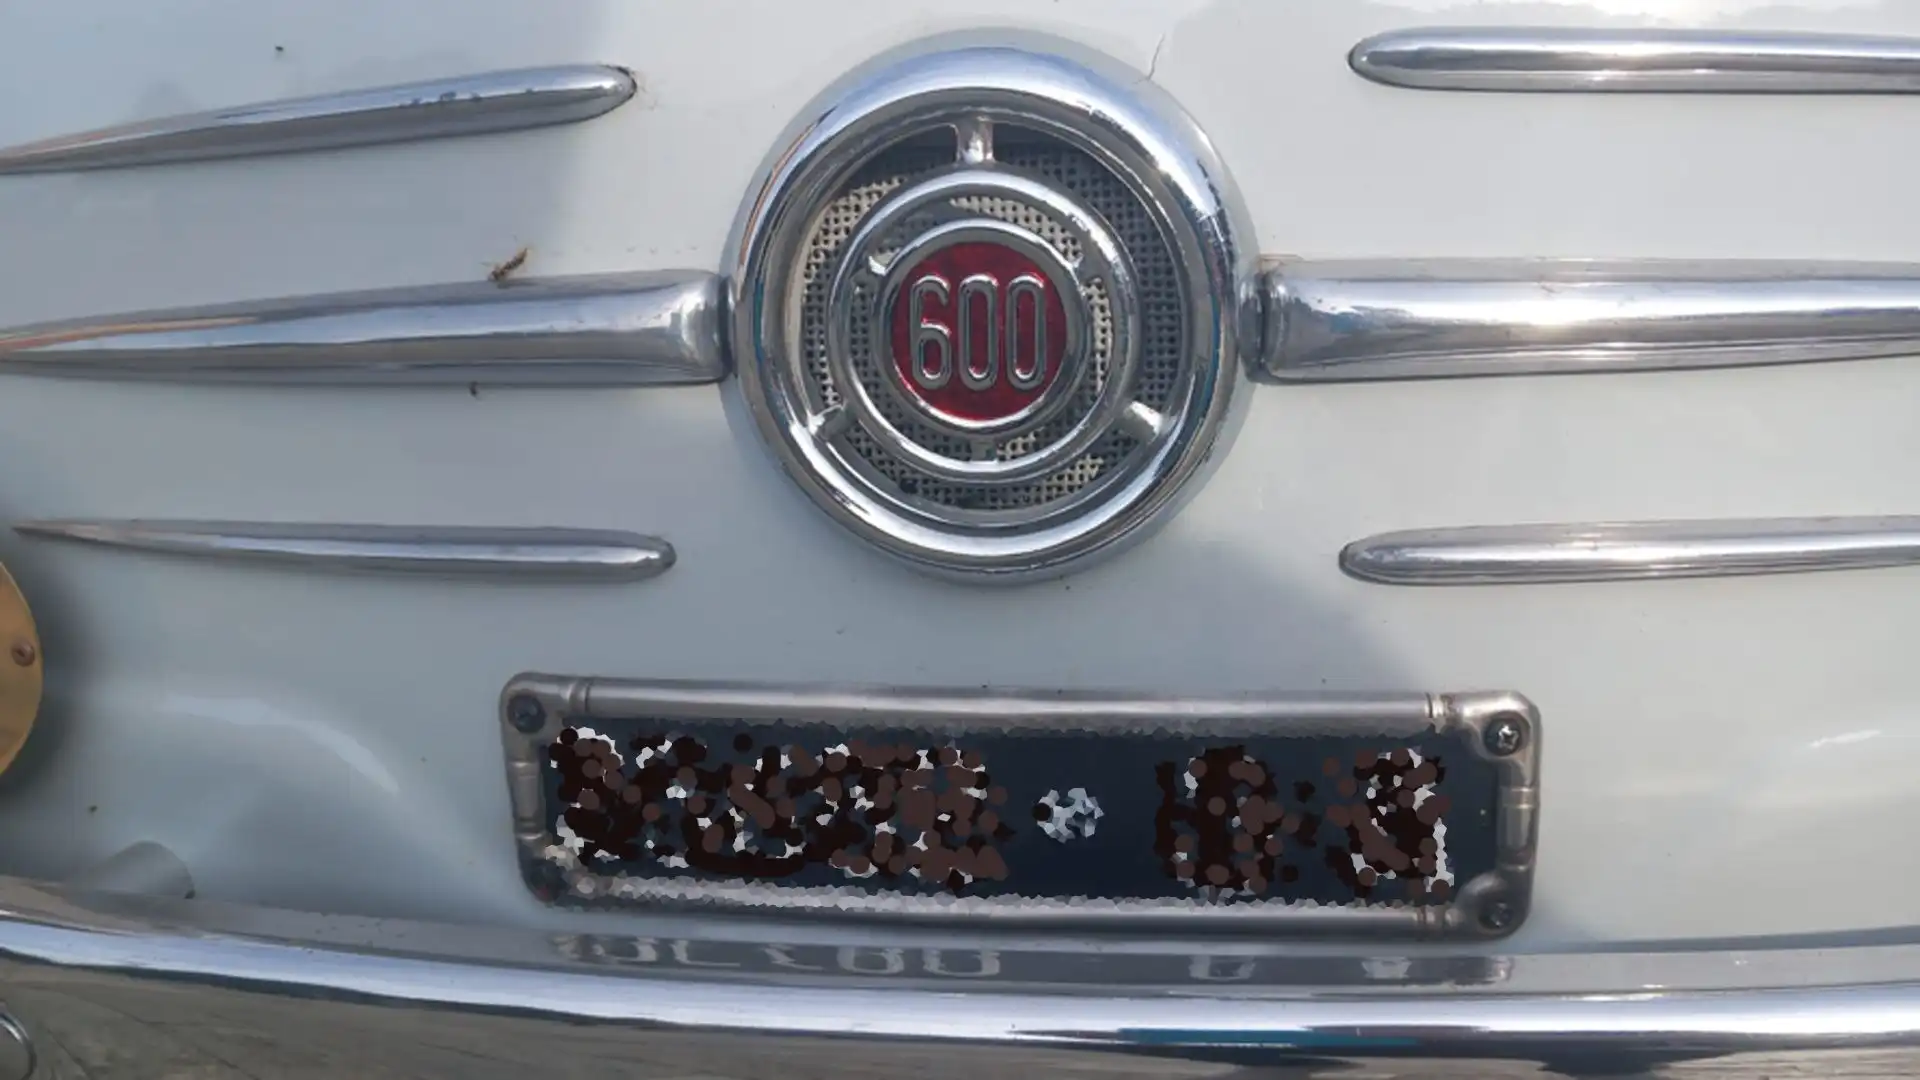 Il simbolo della Fiat era posizionato sulla parte anteriore dell'auto